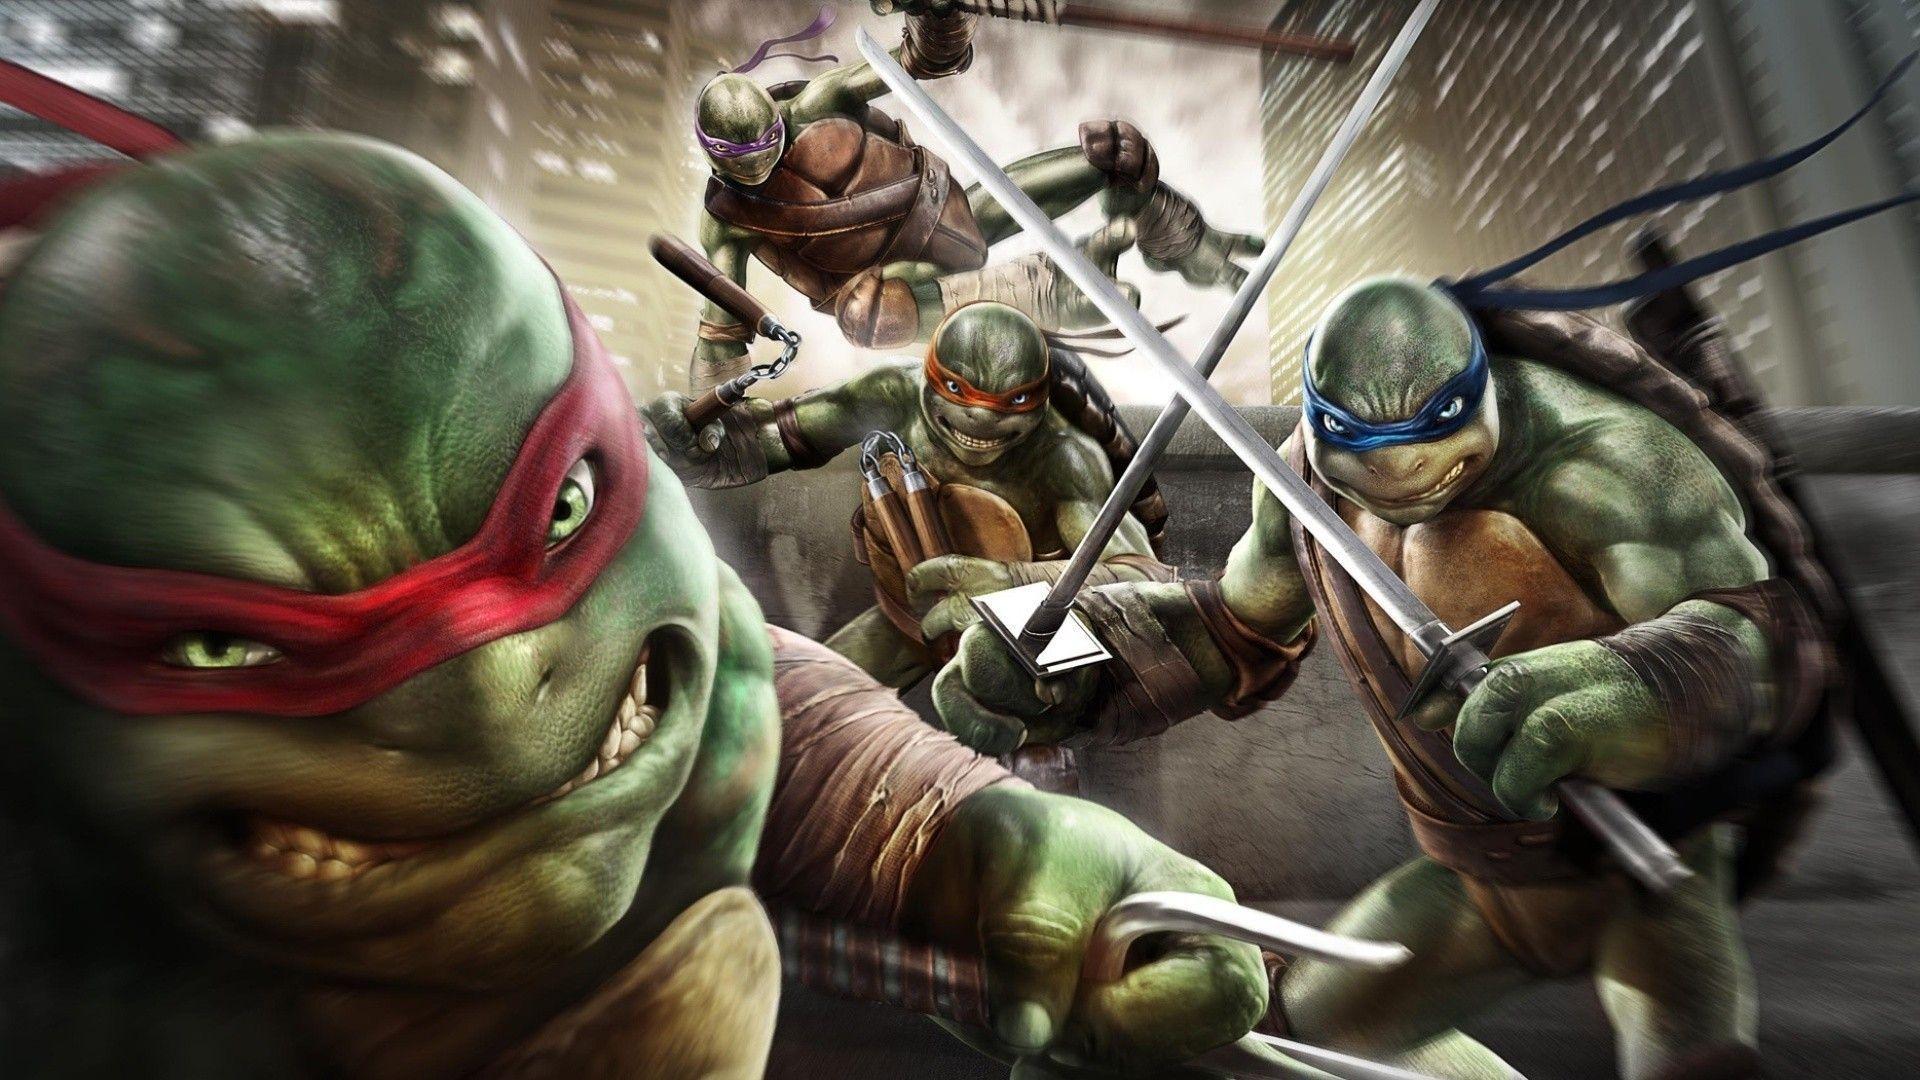 Movie Teenage mutant ninja turtles wallpaper and image